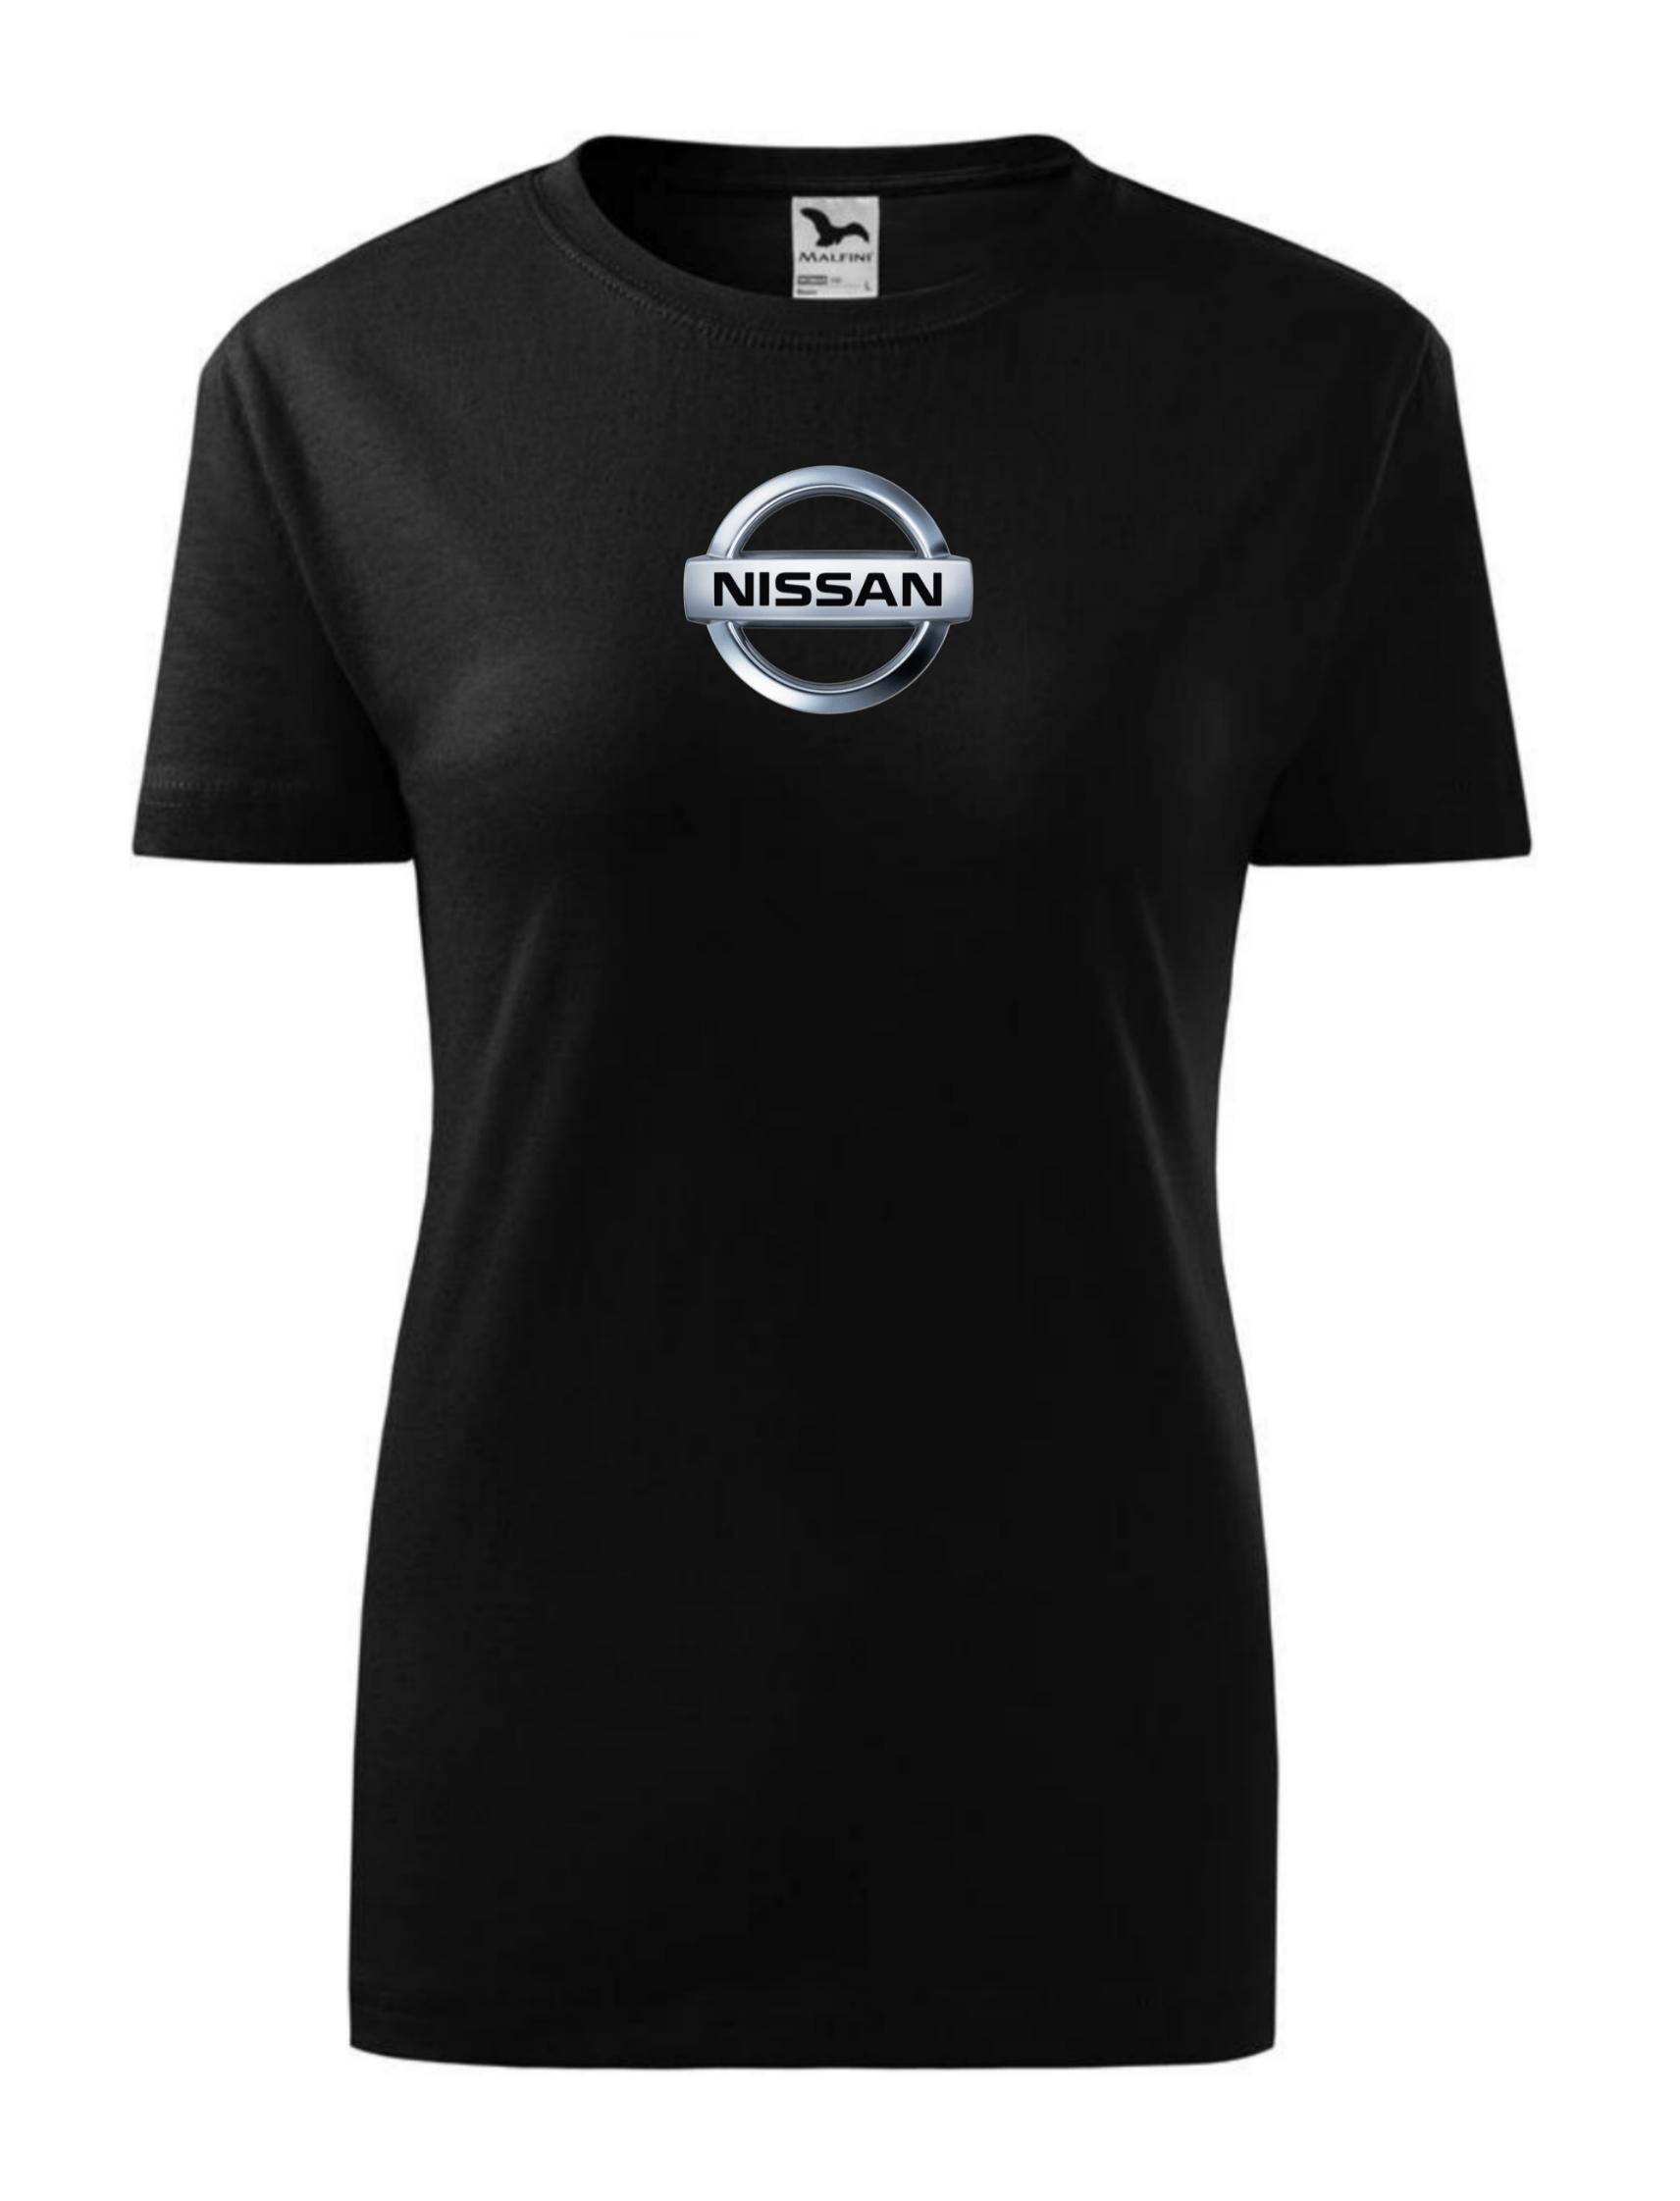 Dámské tričko s potiskem značky Nissan